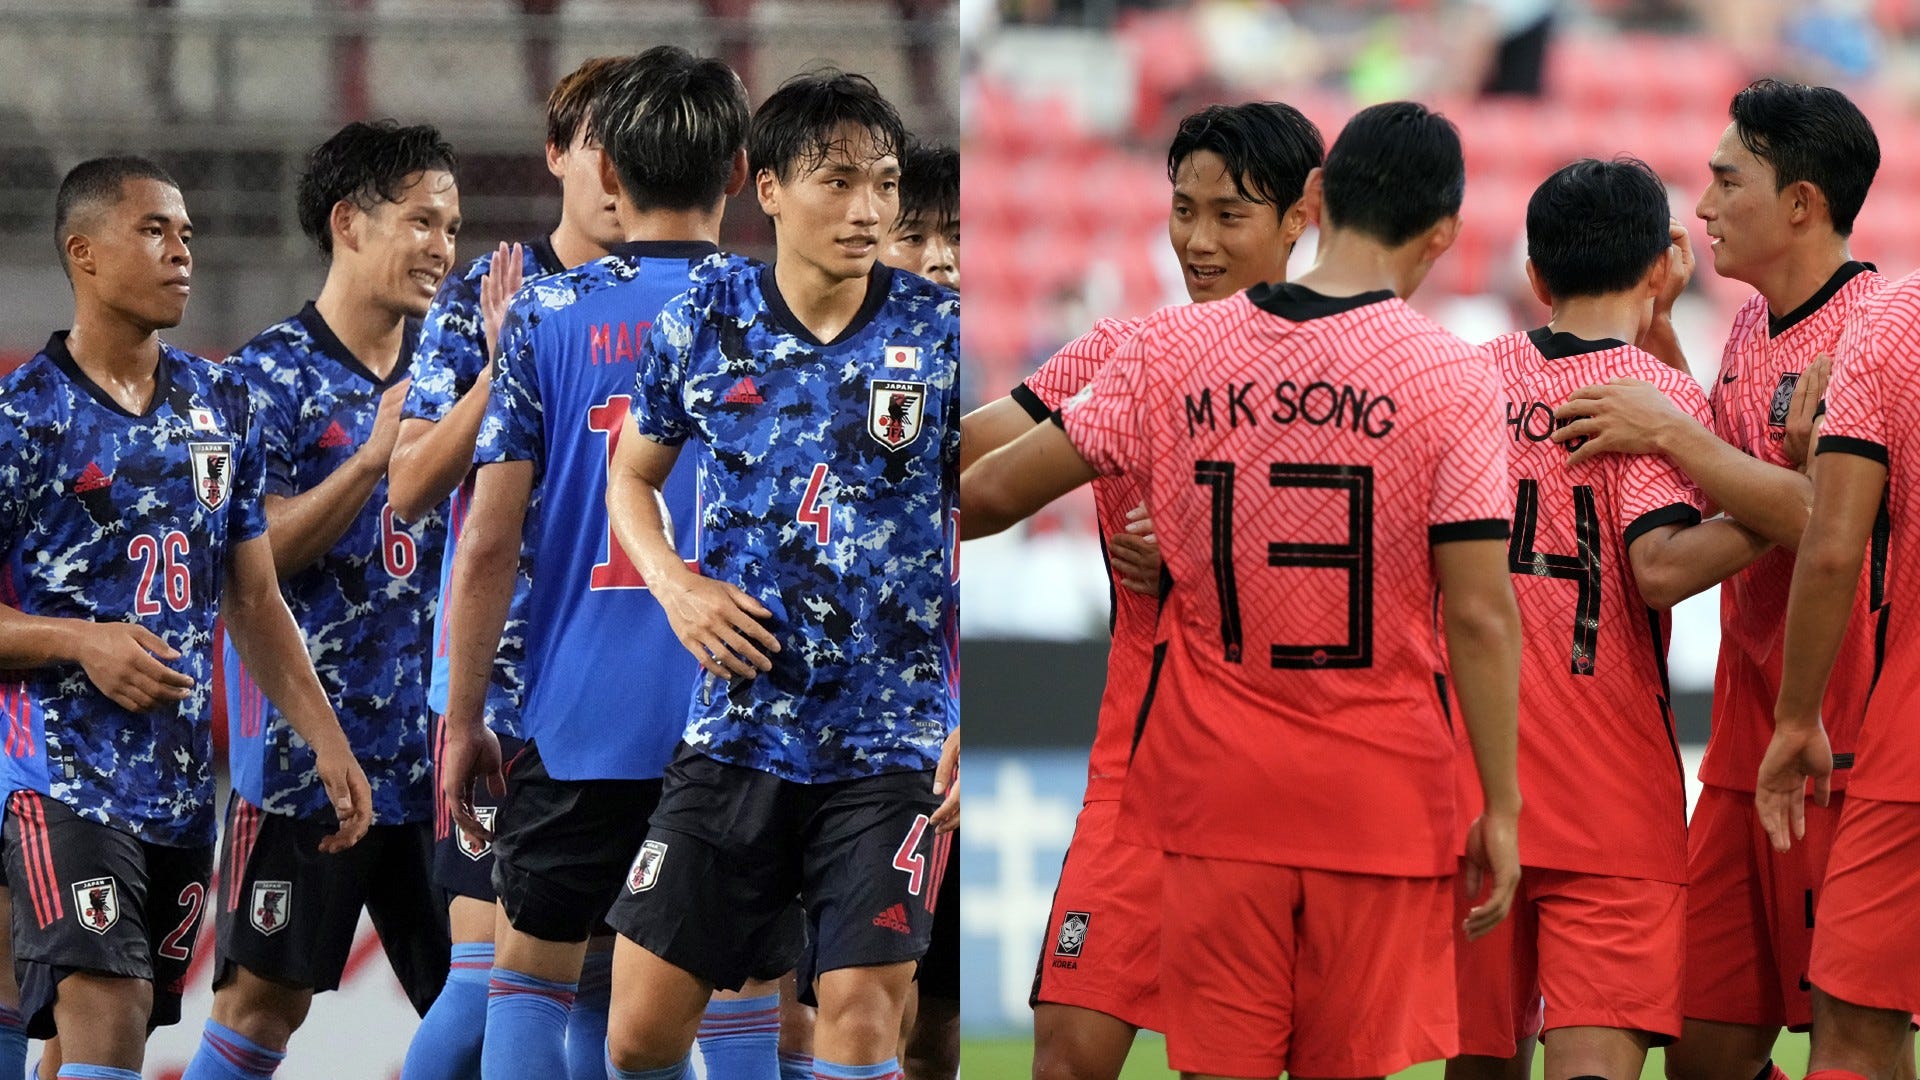 7月27日 サッカー日本代表 韓国戦のキックオフ時間 Tv中継 試合会場は Goal Com 日本